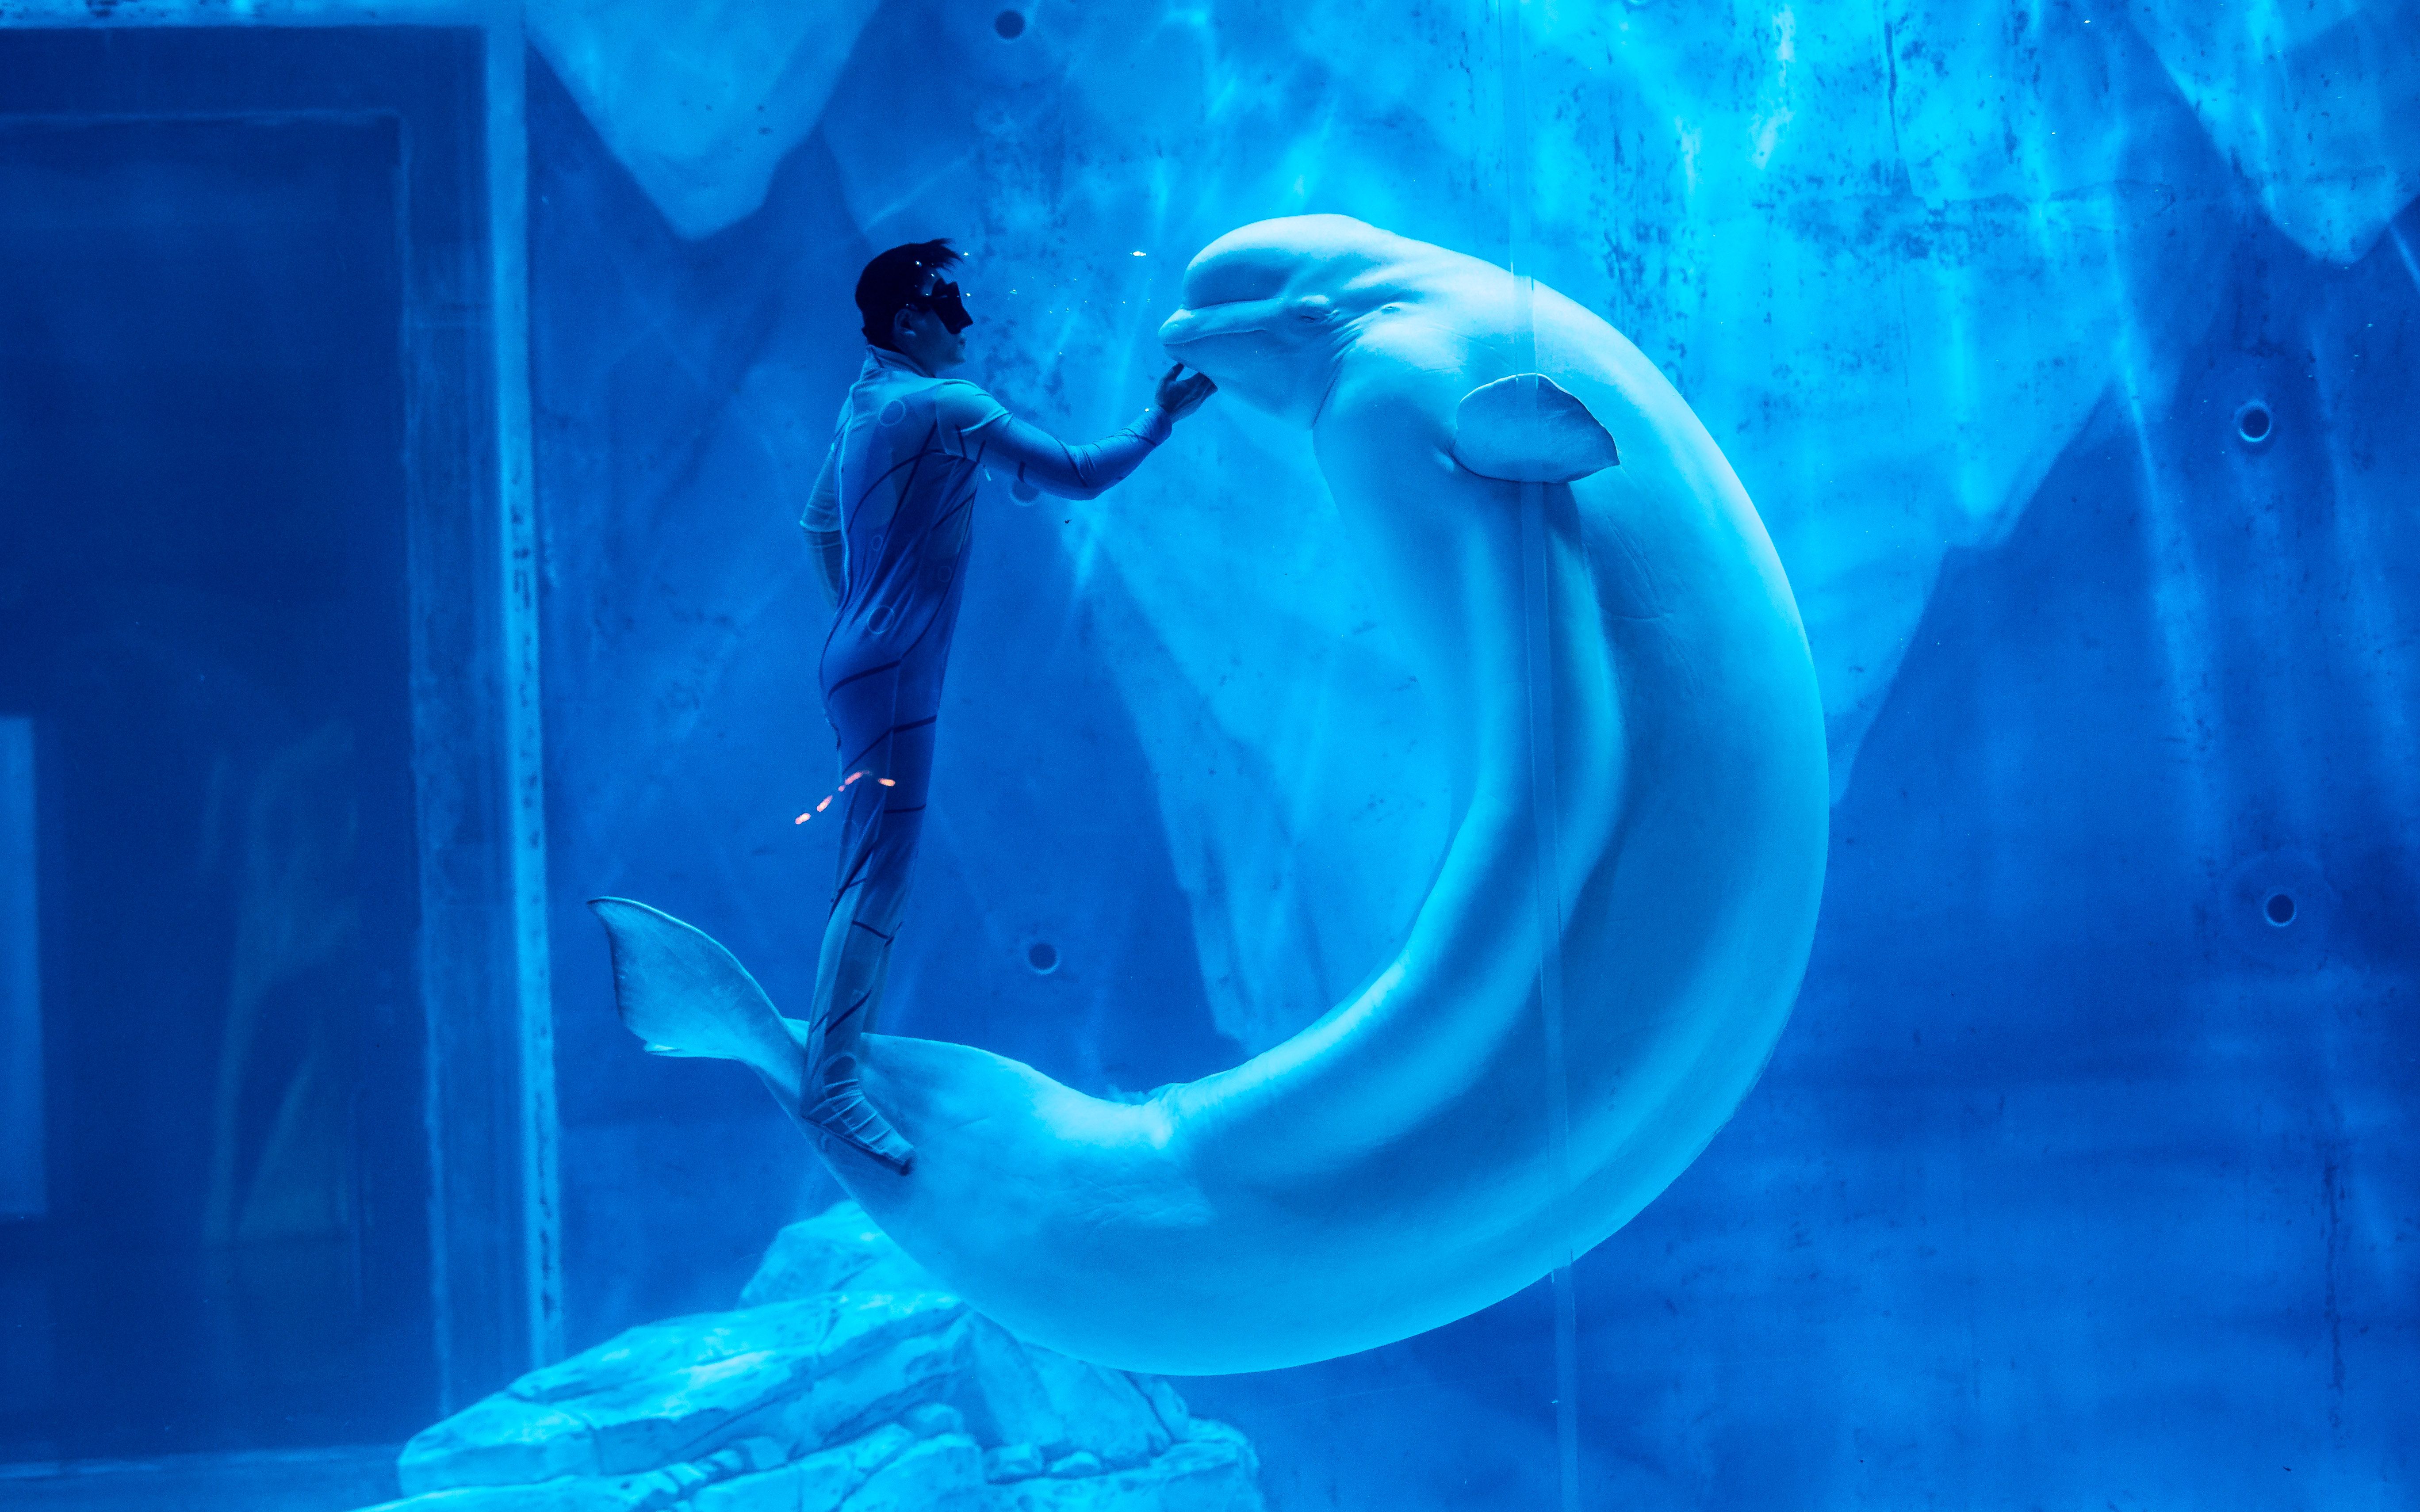 上海海昌海洋公园 《白鲸之梦》唯美呈现 当舞者邂逅白鲸 共赴鲸奇